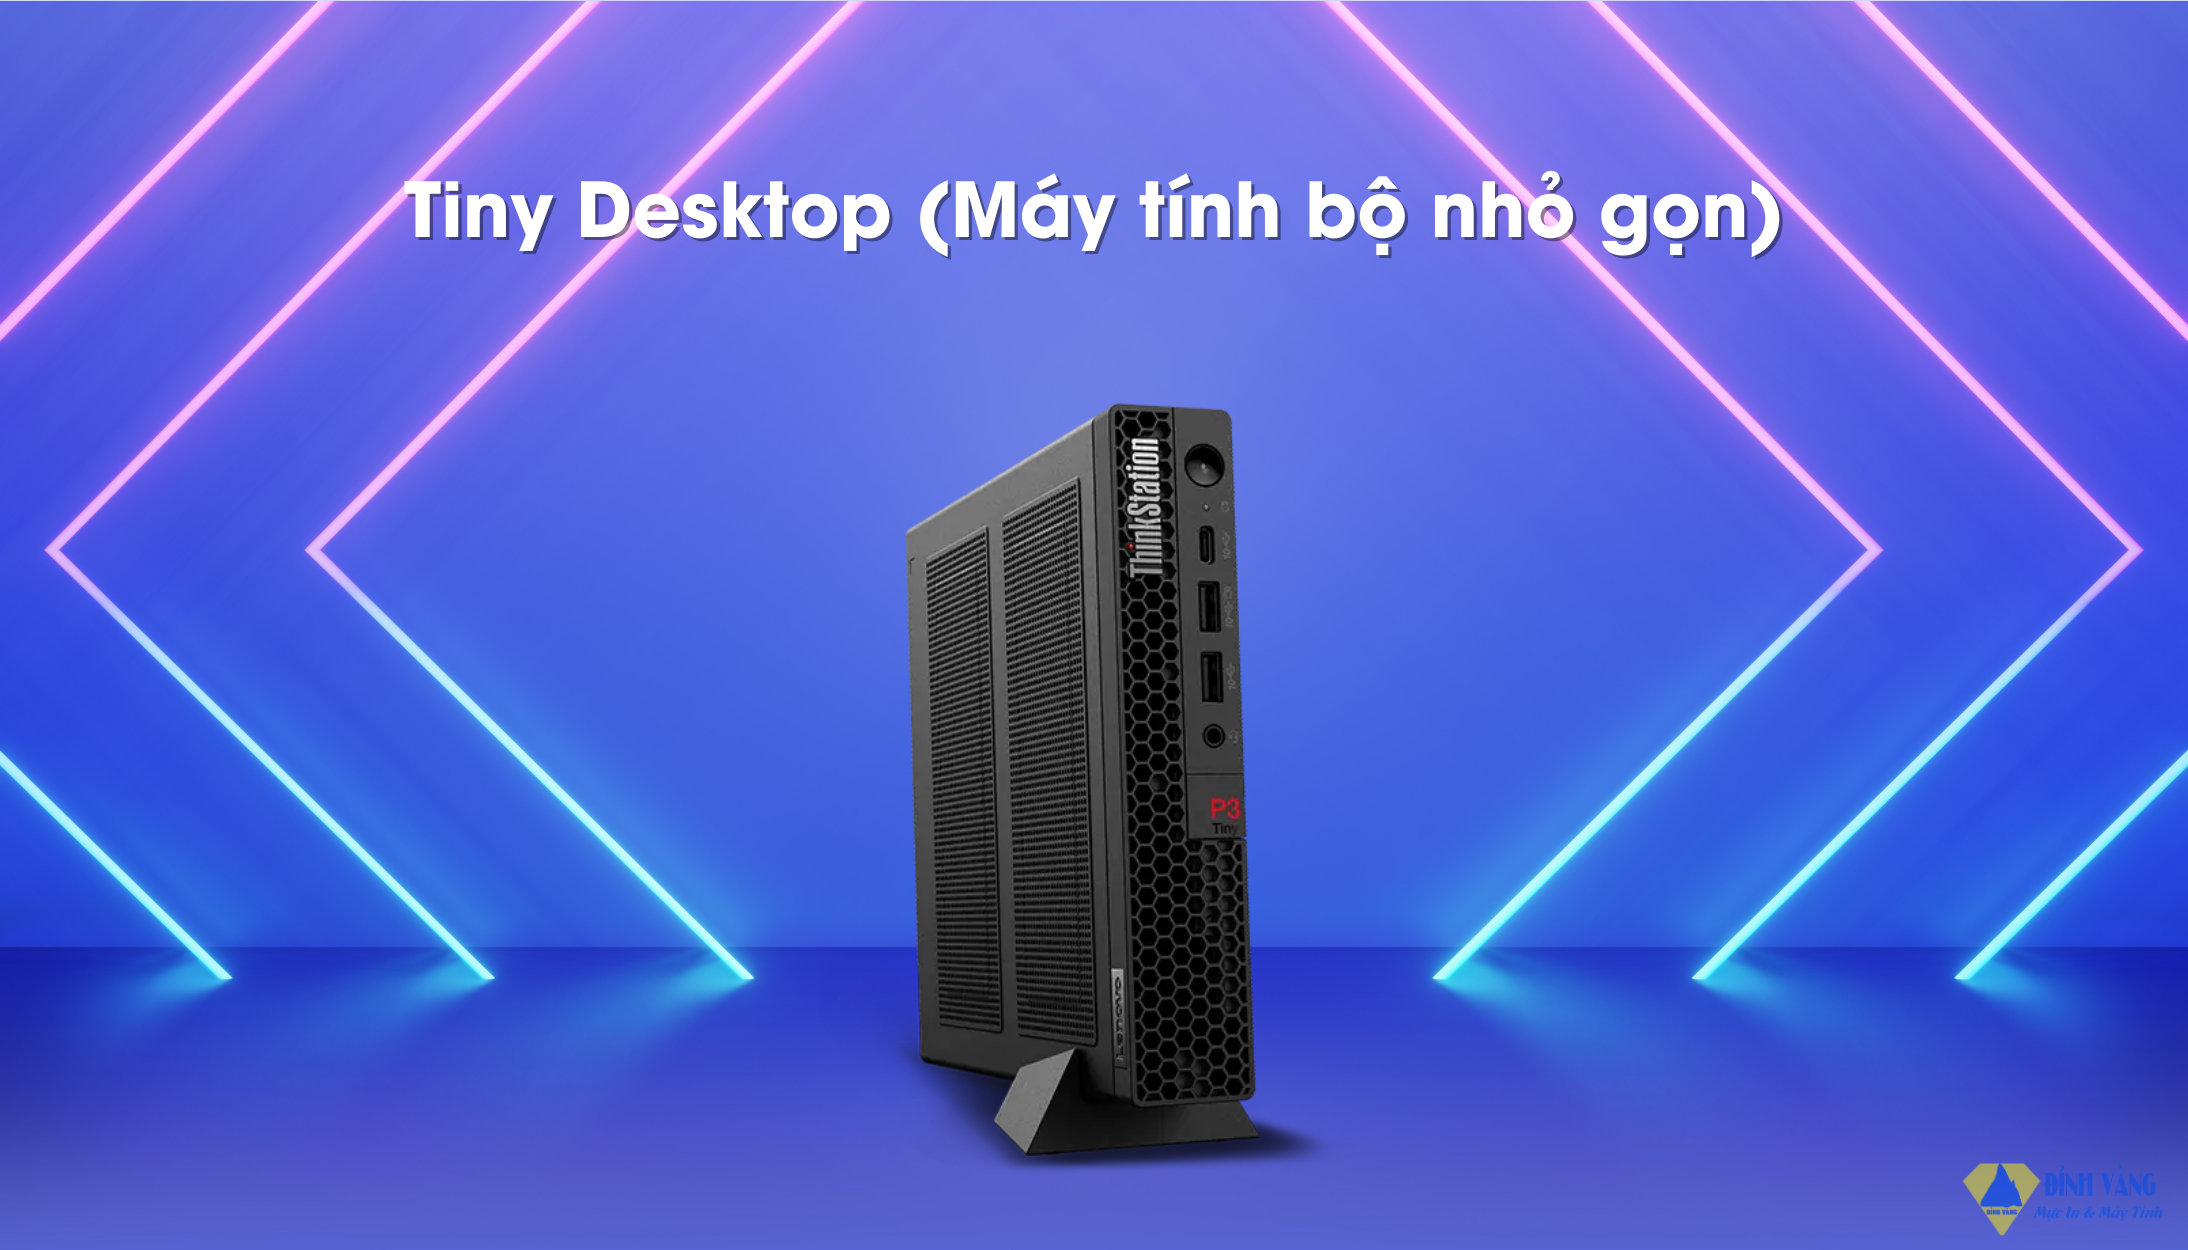 Tiny Desktop (Máy tính bộ nhỏ gọn).